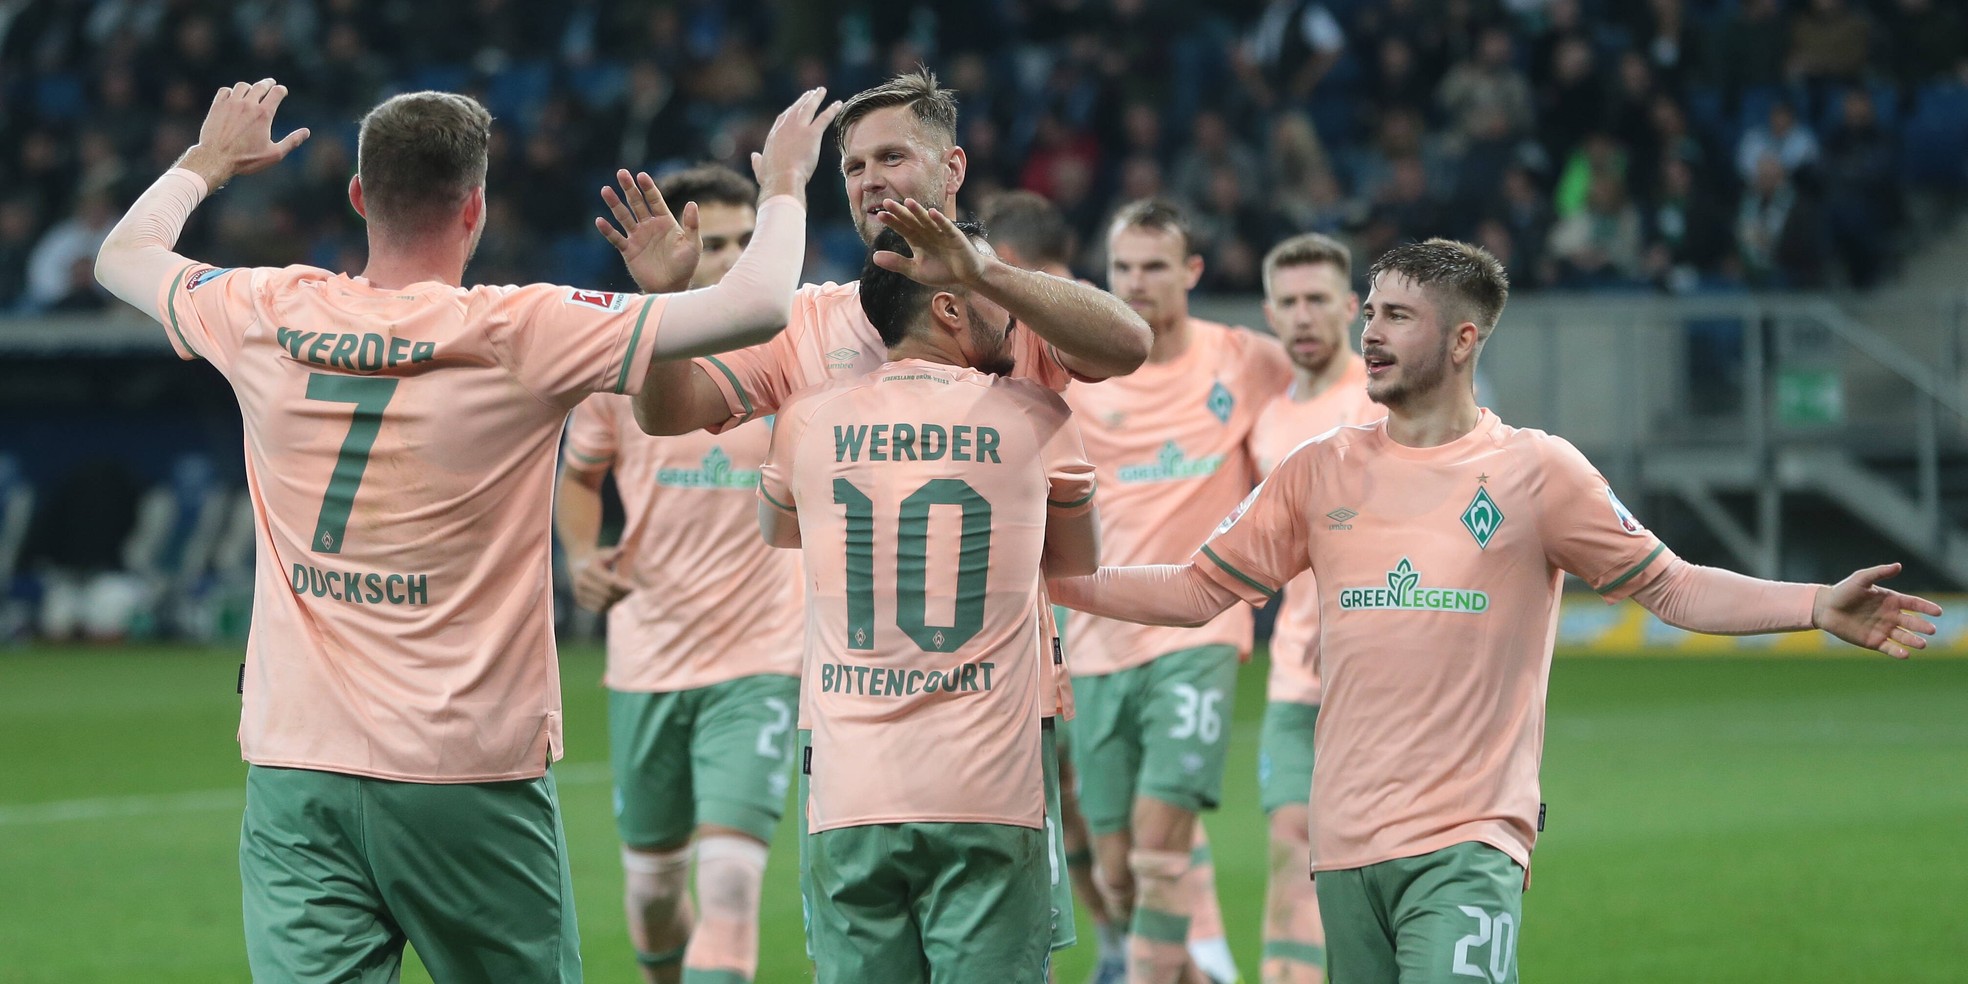 Der SV Werder Bremen bei Comunio: Füllkrug, Ducksch & Co. einsortiert